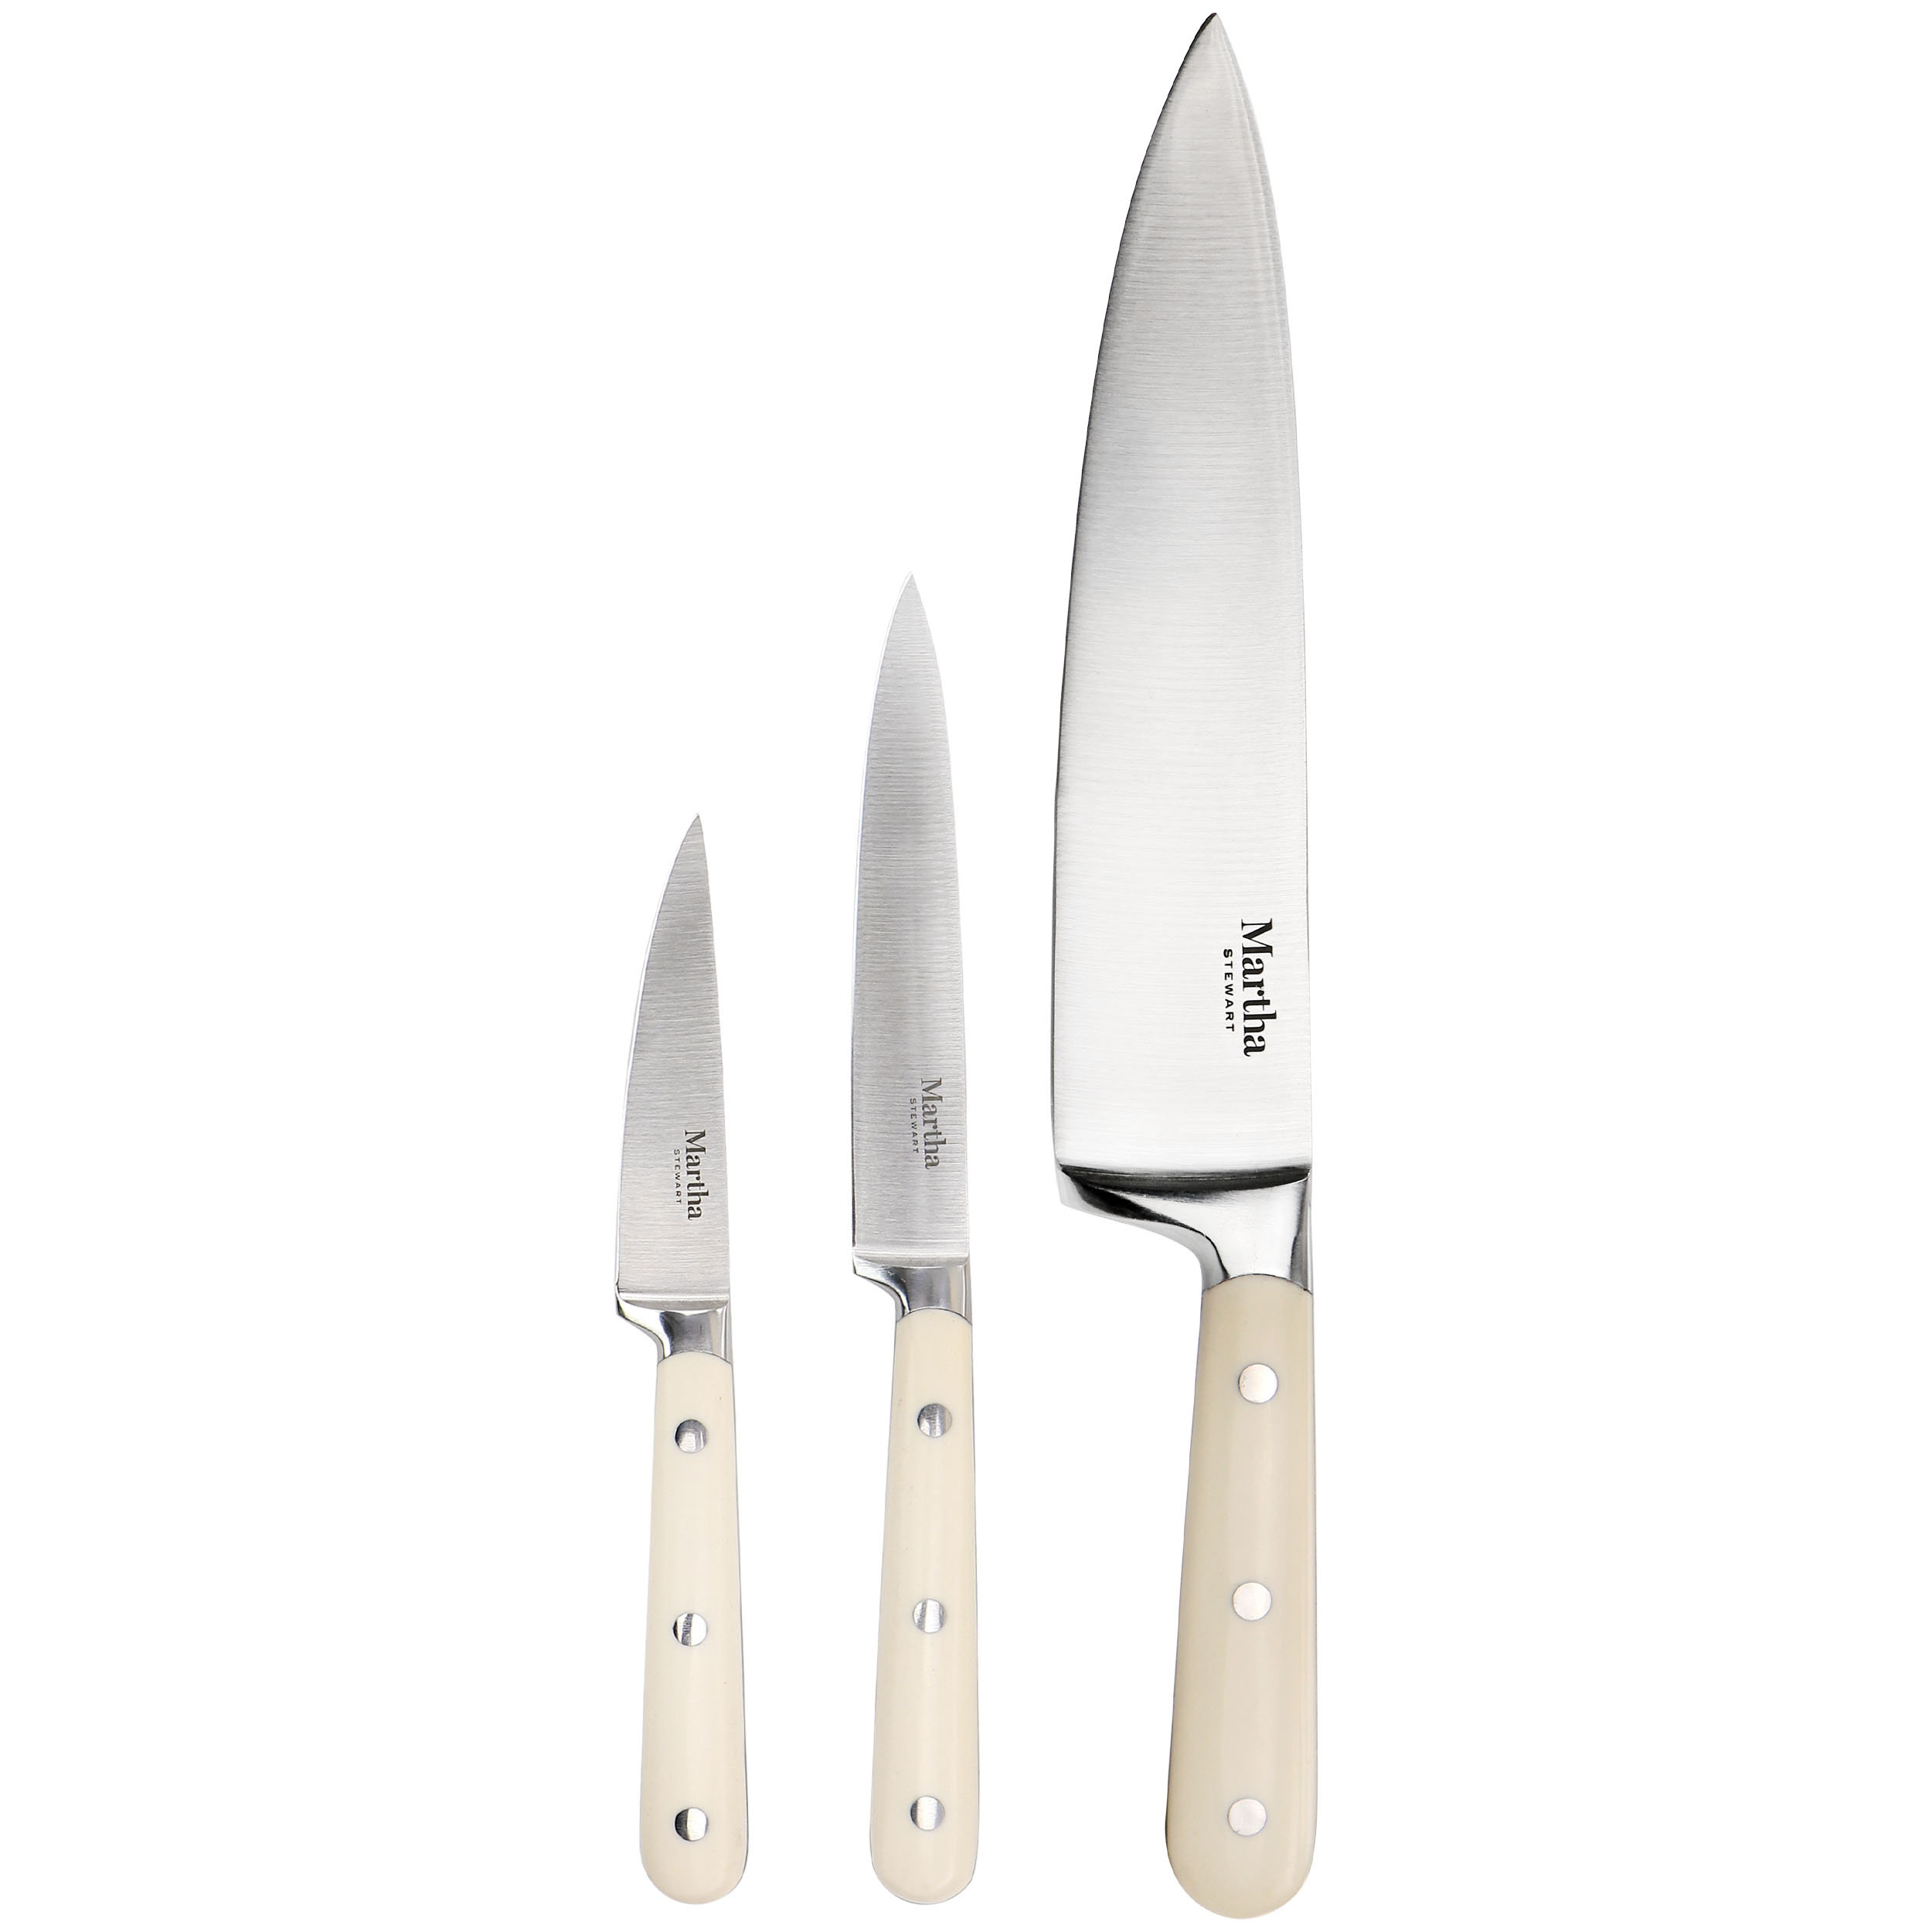 https://assets.wfcdn.com/im/59568751/compr-r85/2187/218751490/martha-stewart-3-piece-essential-kitchen-knife-cutlery-set-in-linen.jpg